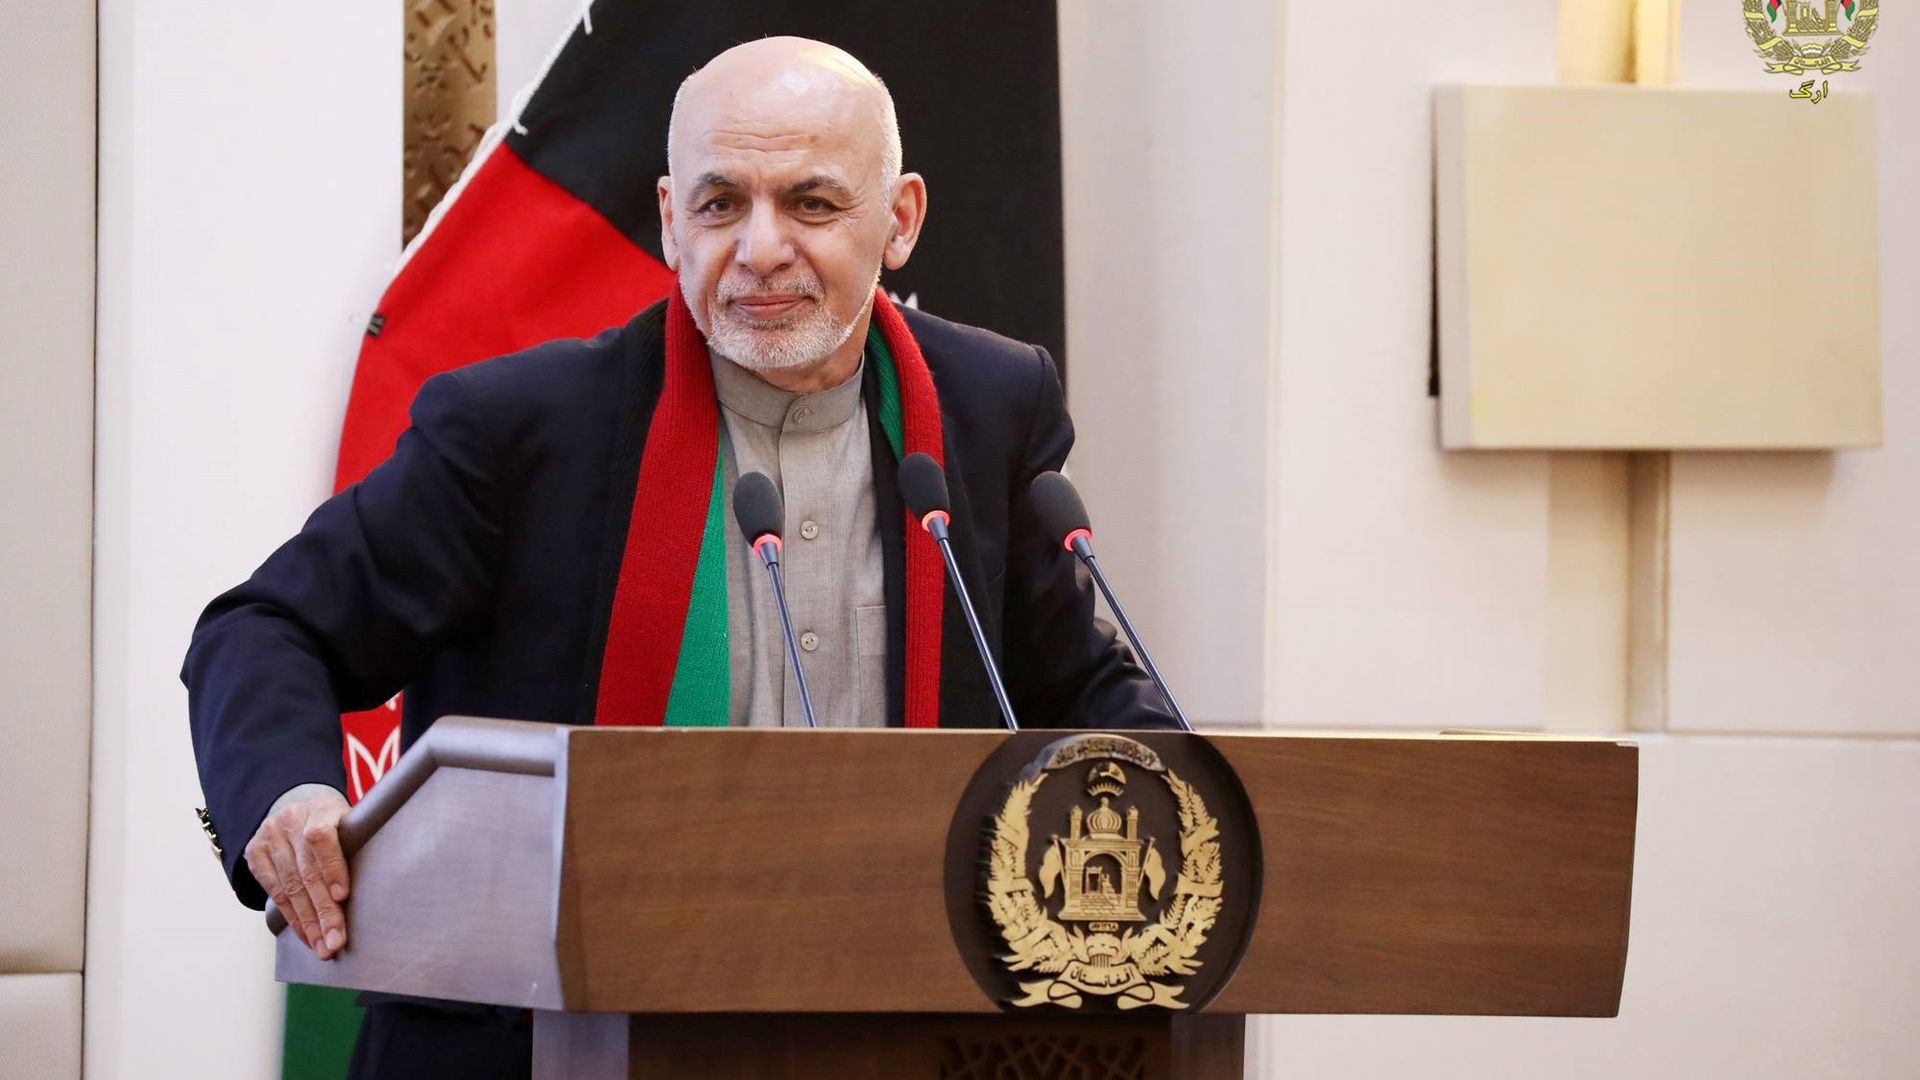 Ashfraf Ghani at a lectern